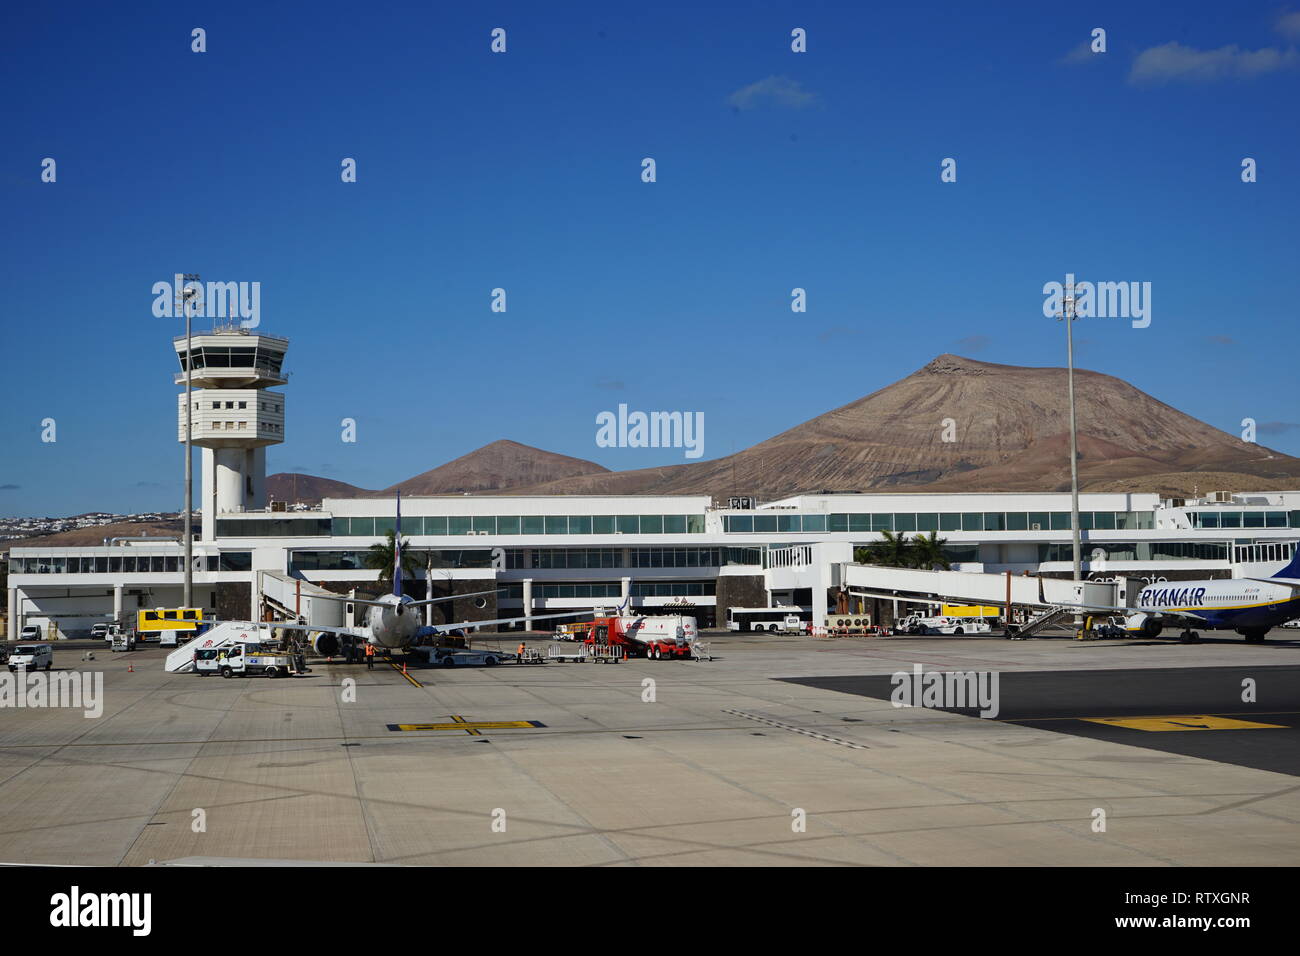 Flughafen Arrecife, Lanzarote, Kanarische Inseln, Spanien Stock Photo